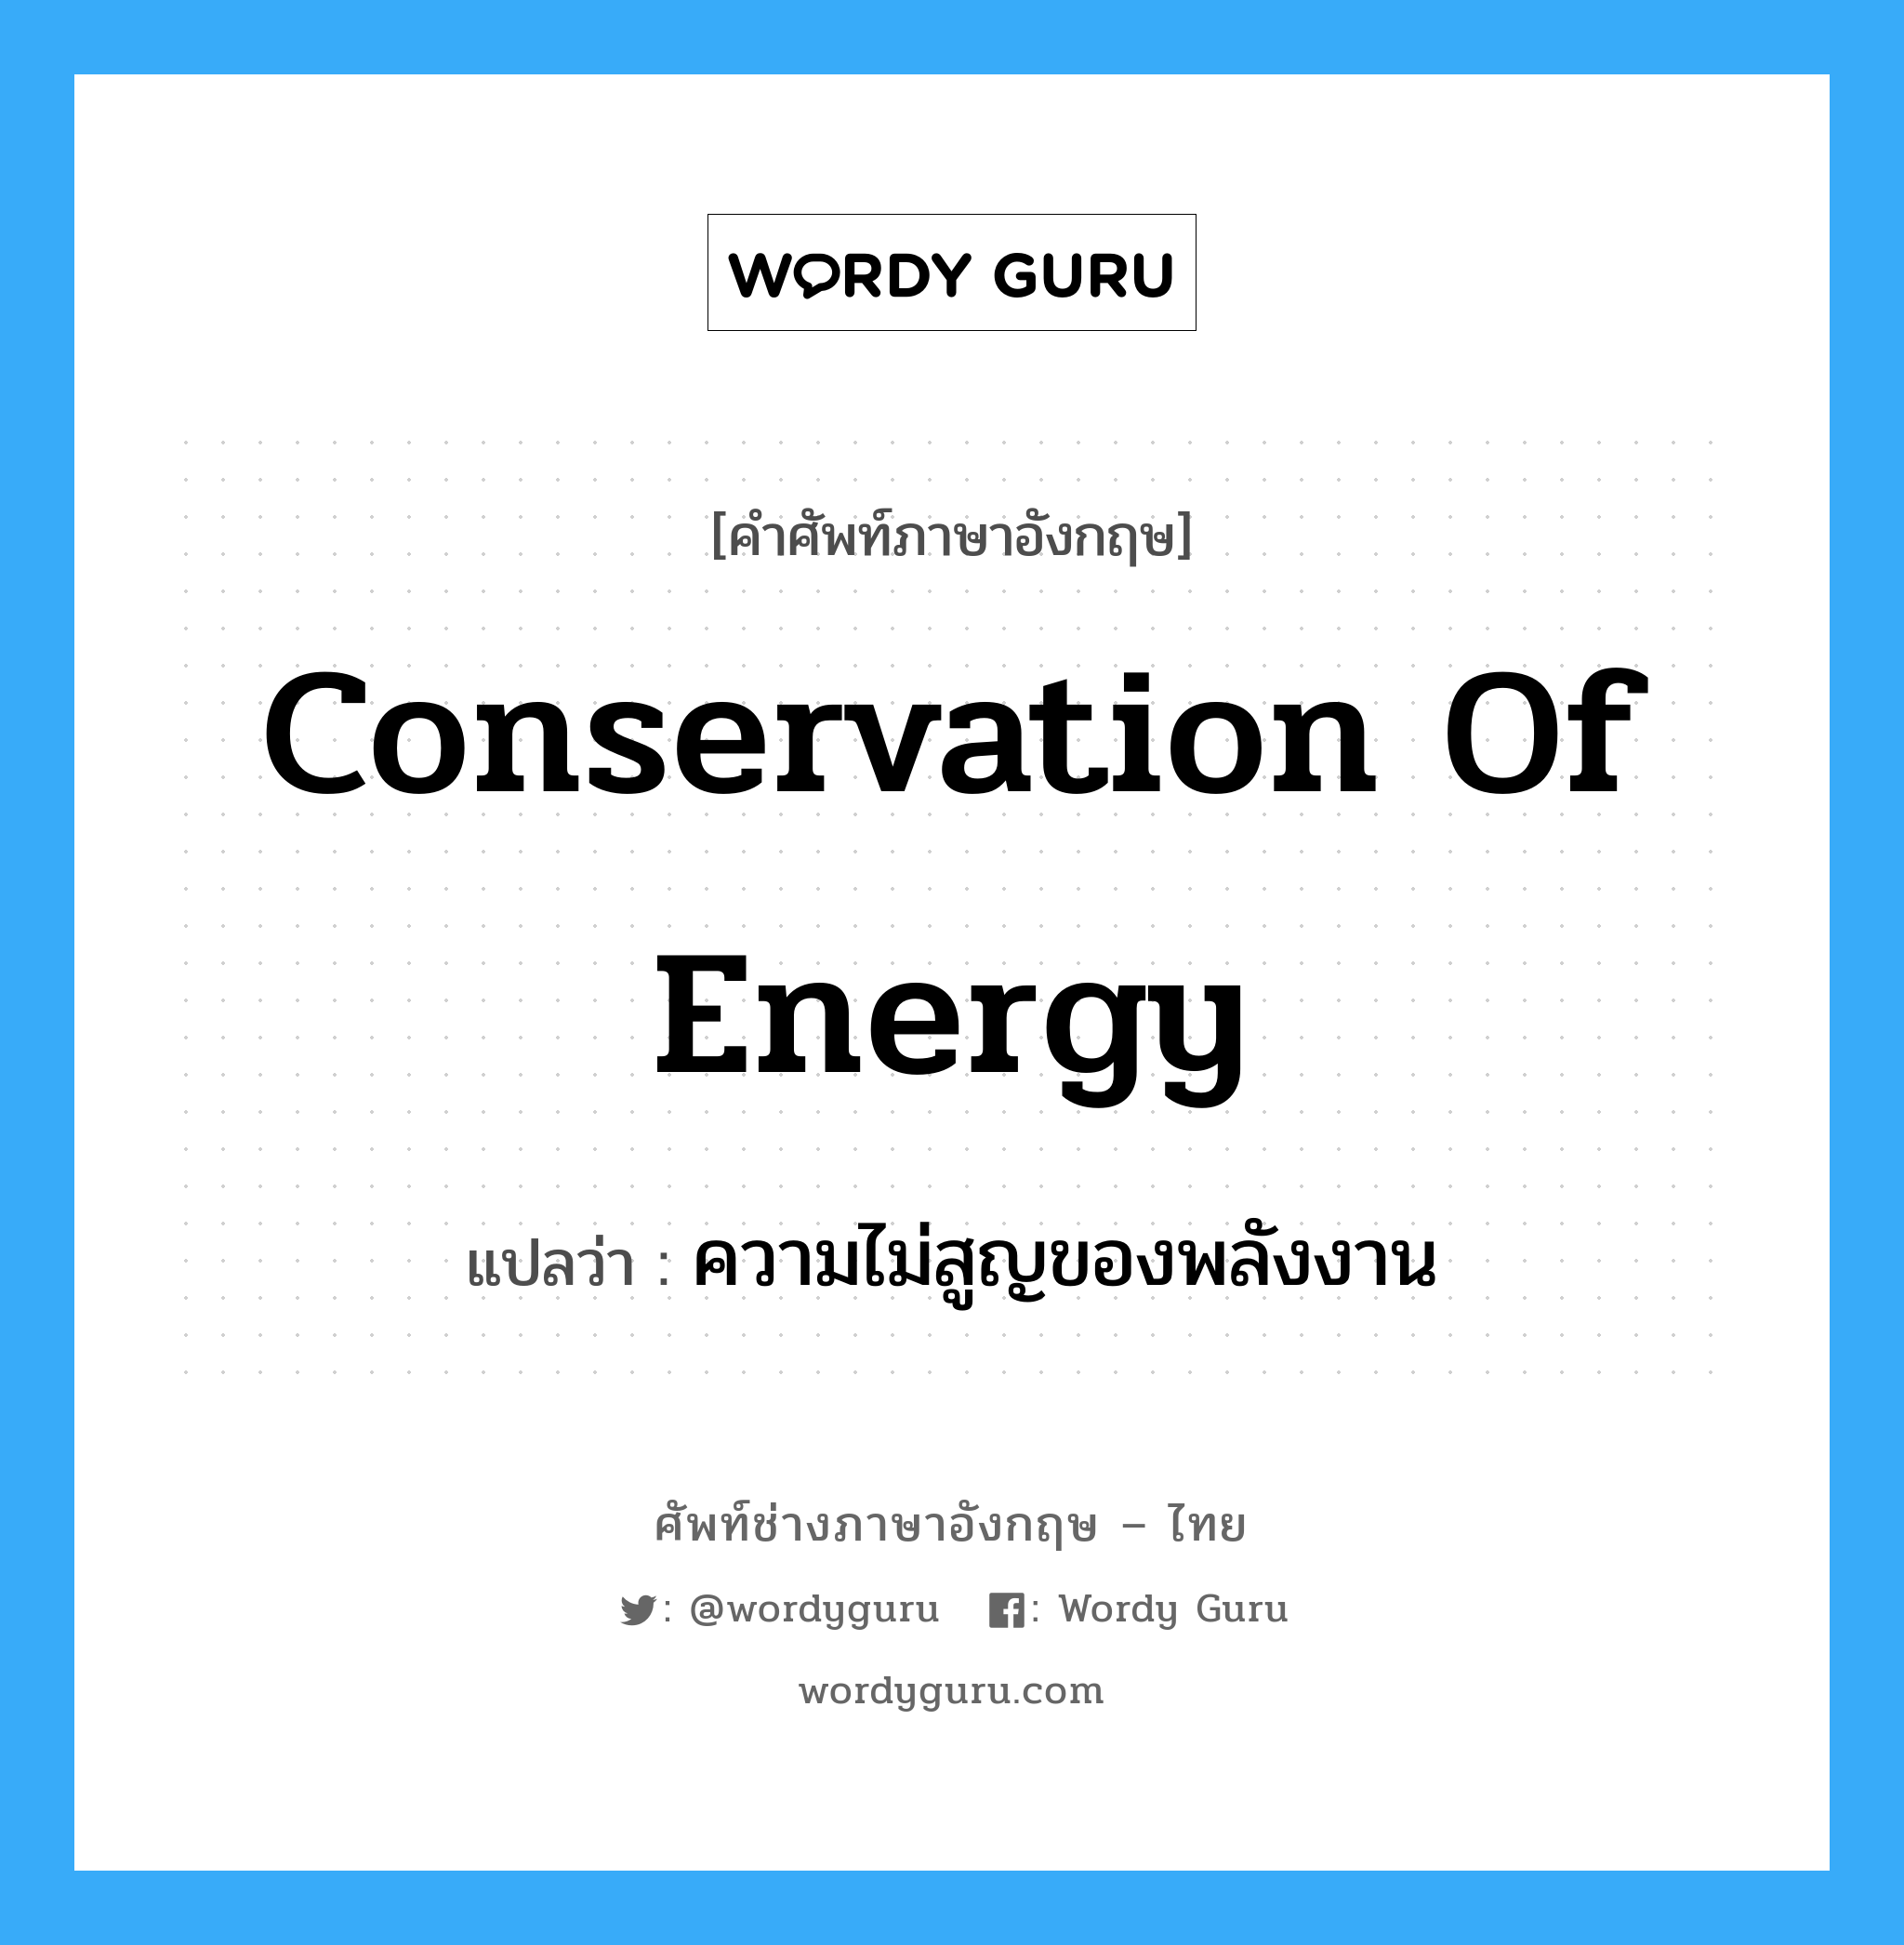 ความไม่สูญของพลังงาน ภาษาอังกฤษ?, คำศัพท์ช่างภาษาอังกฤษ - ไทย ความไม่สูญของพลังงาน คำศัพท์ภาษาอังกฤษ ความไม่สูญของพลังงาน แปลว่า conservation of energy